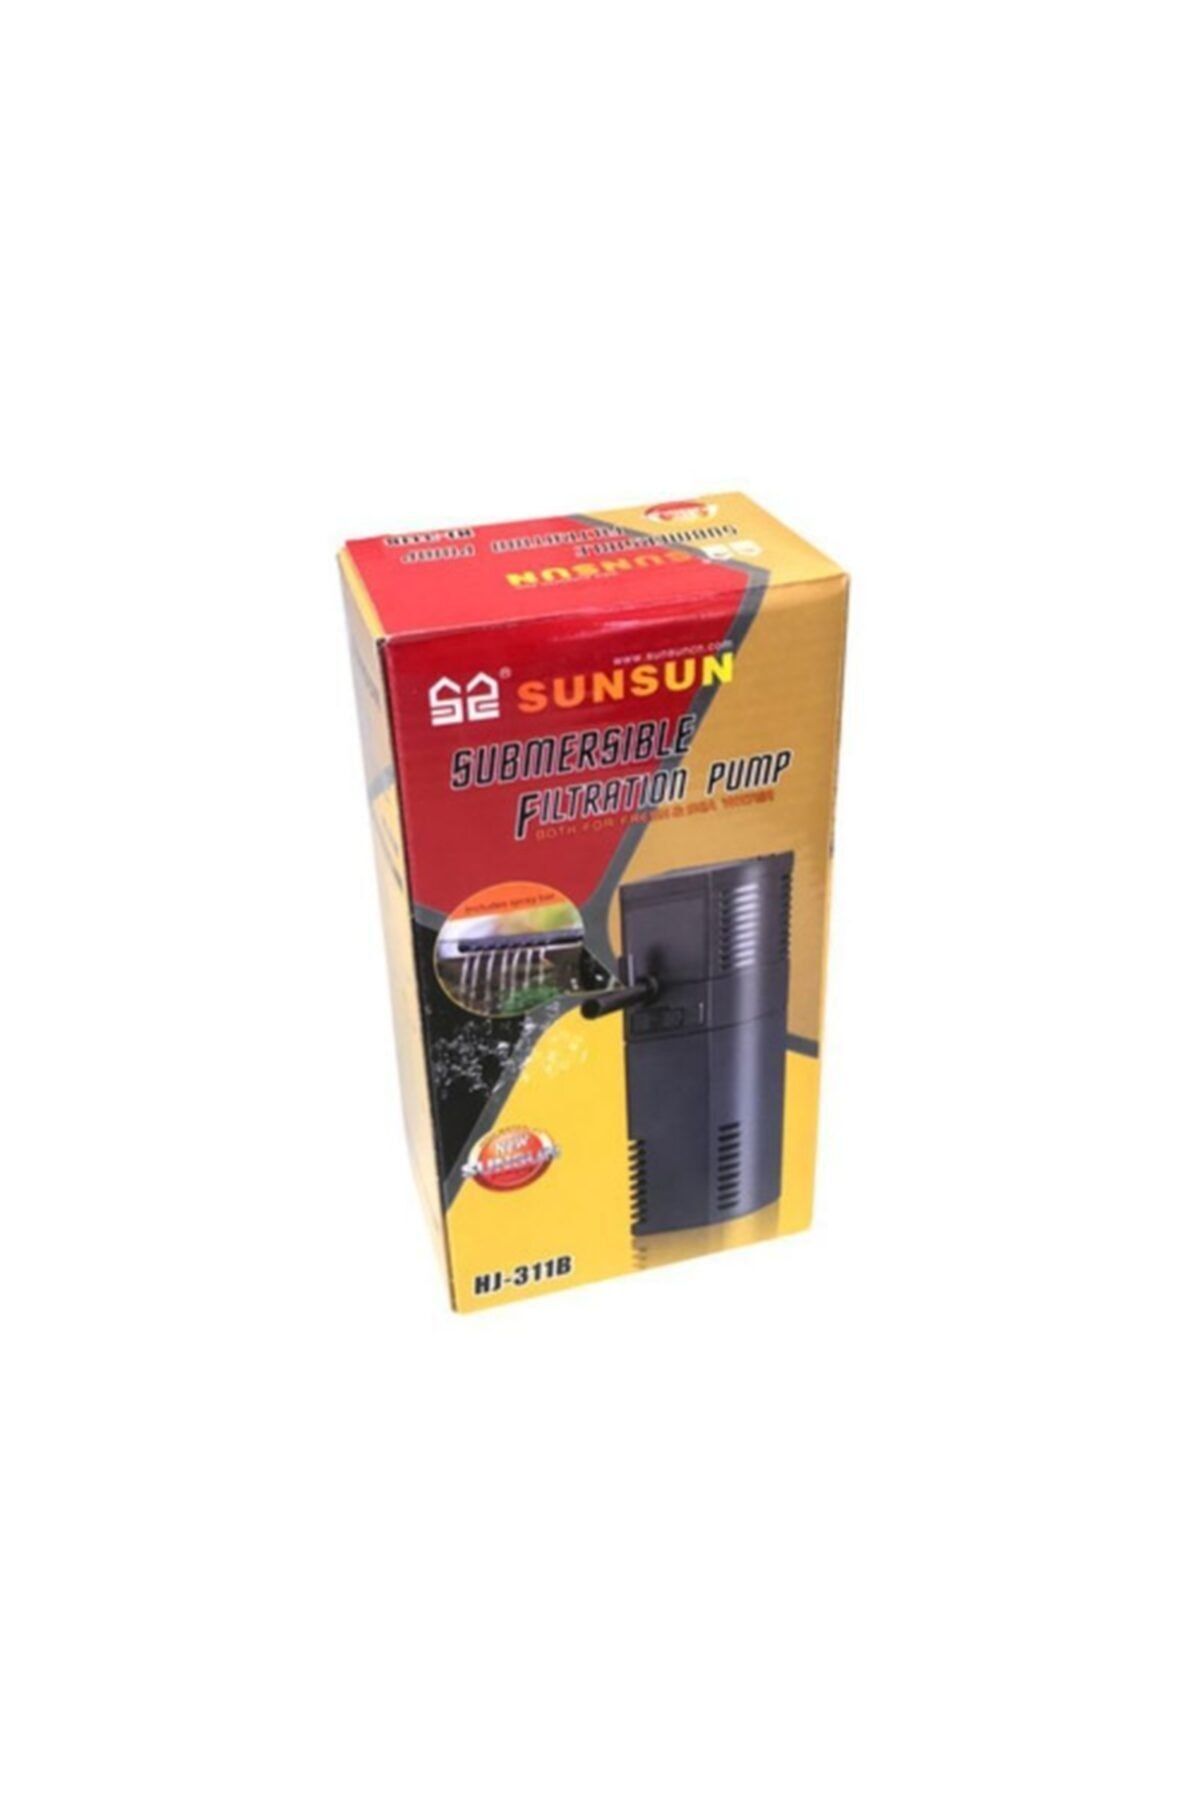 SunSun Hj-311b Akvaryum Mini Iç Filtre 300 L/s 2w